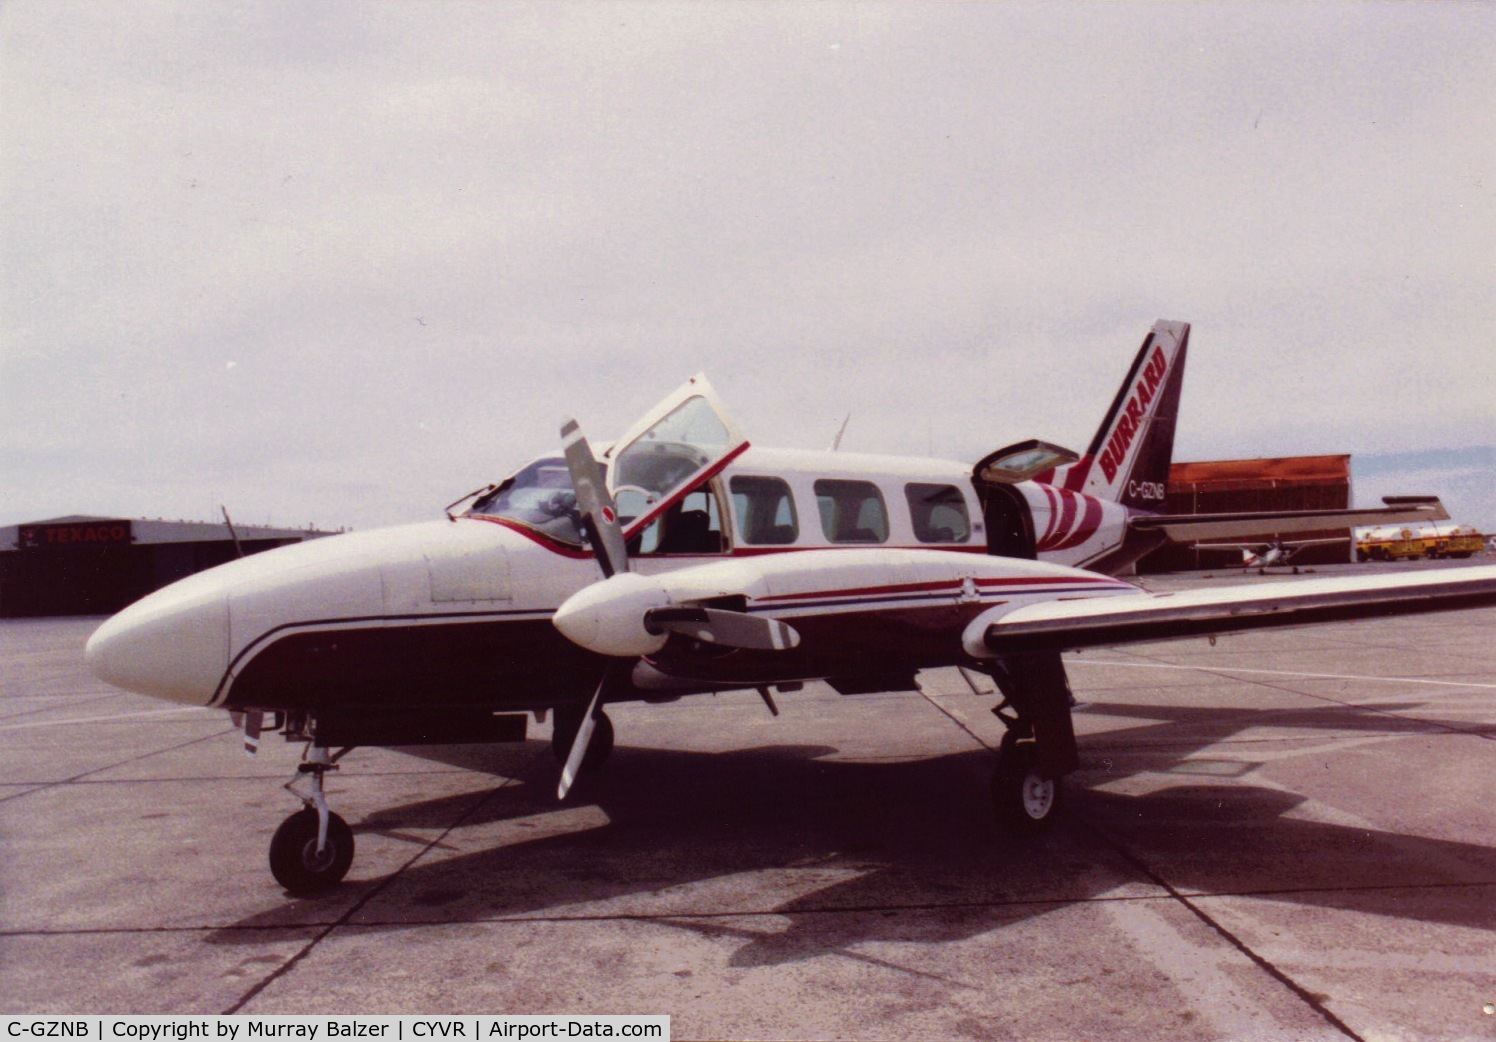 C-GZNB, 1977 Piper PA-31-350 Chieftain C/N 31-7752079, Burrard Air